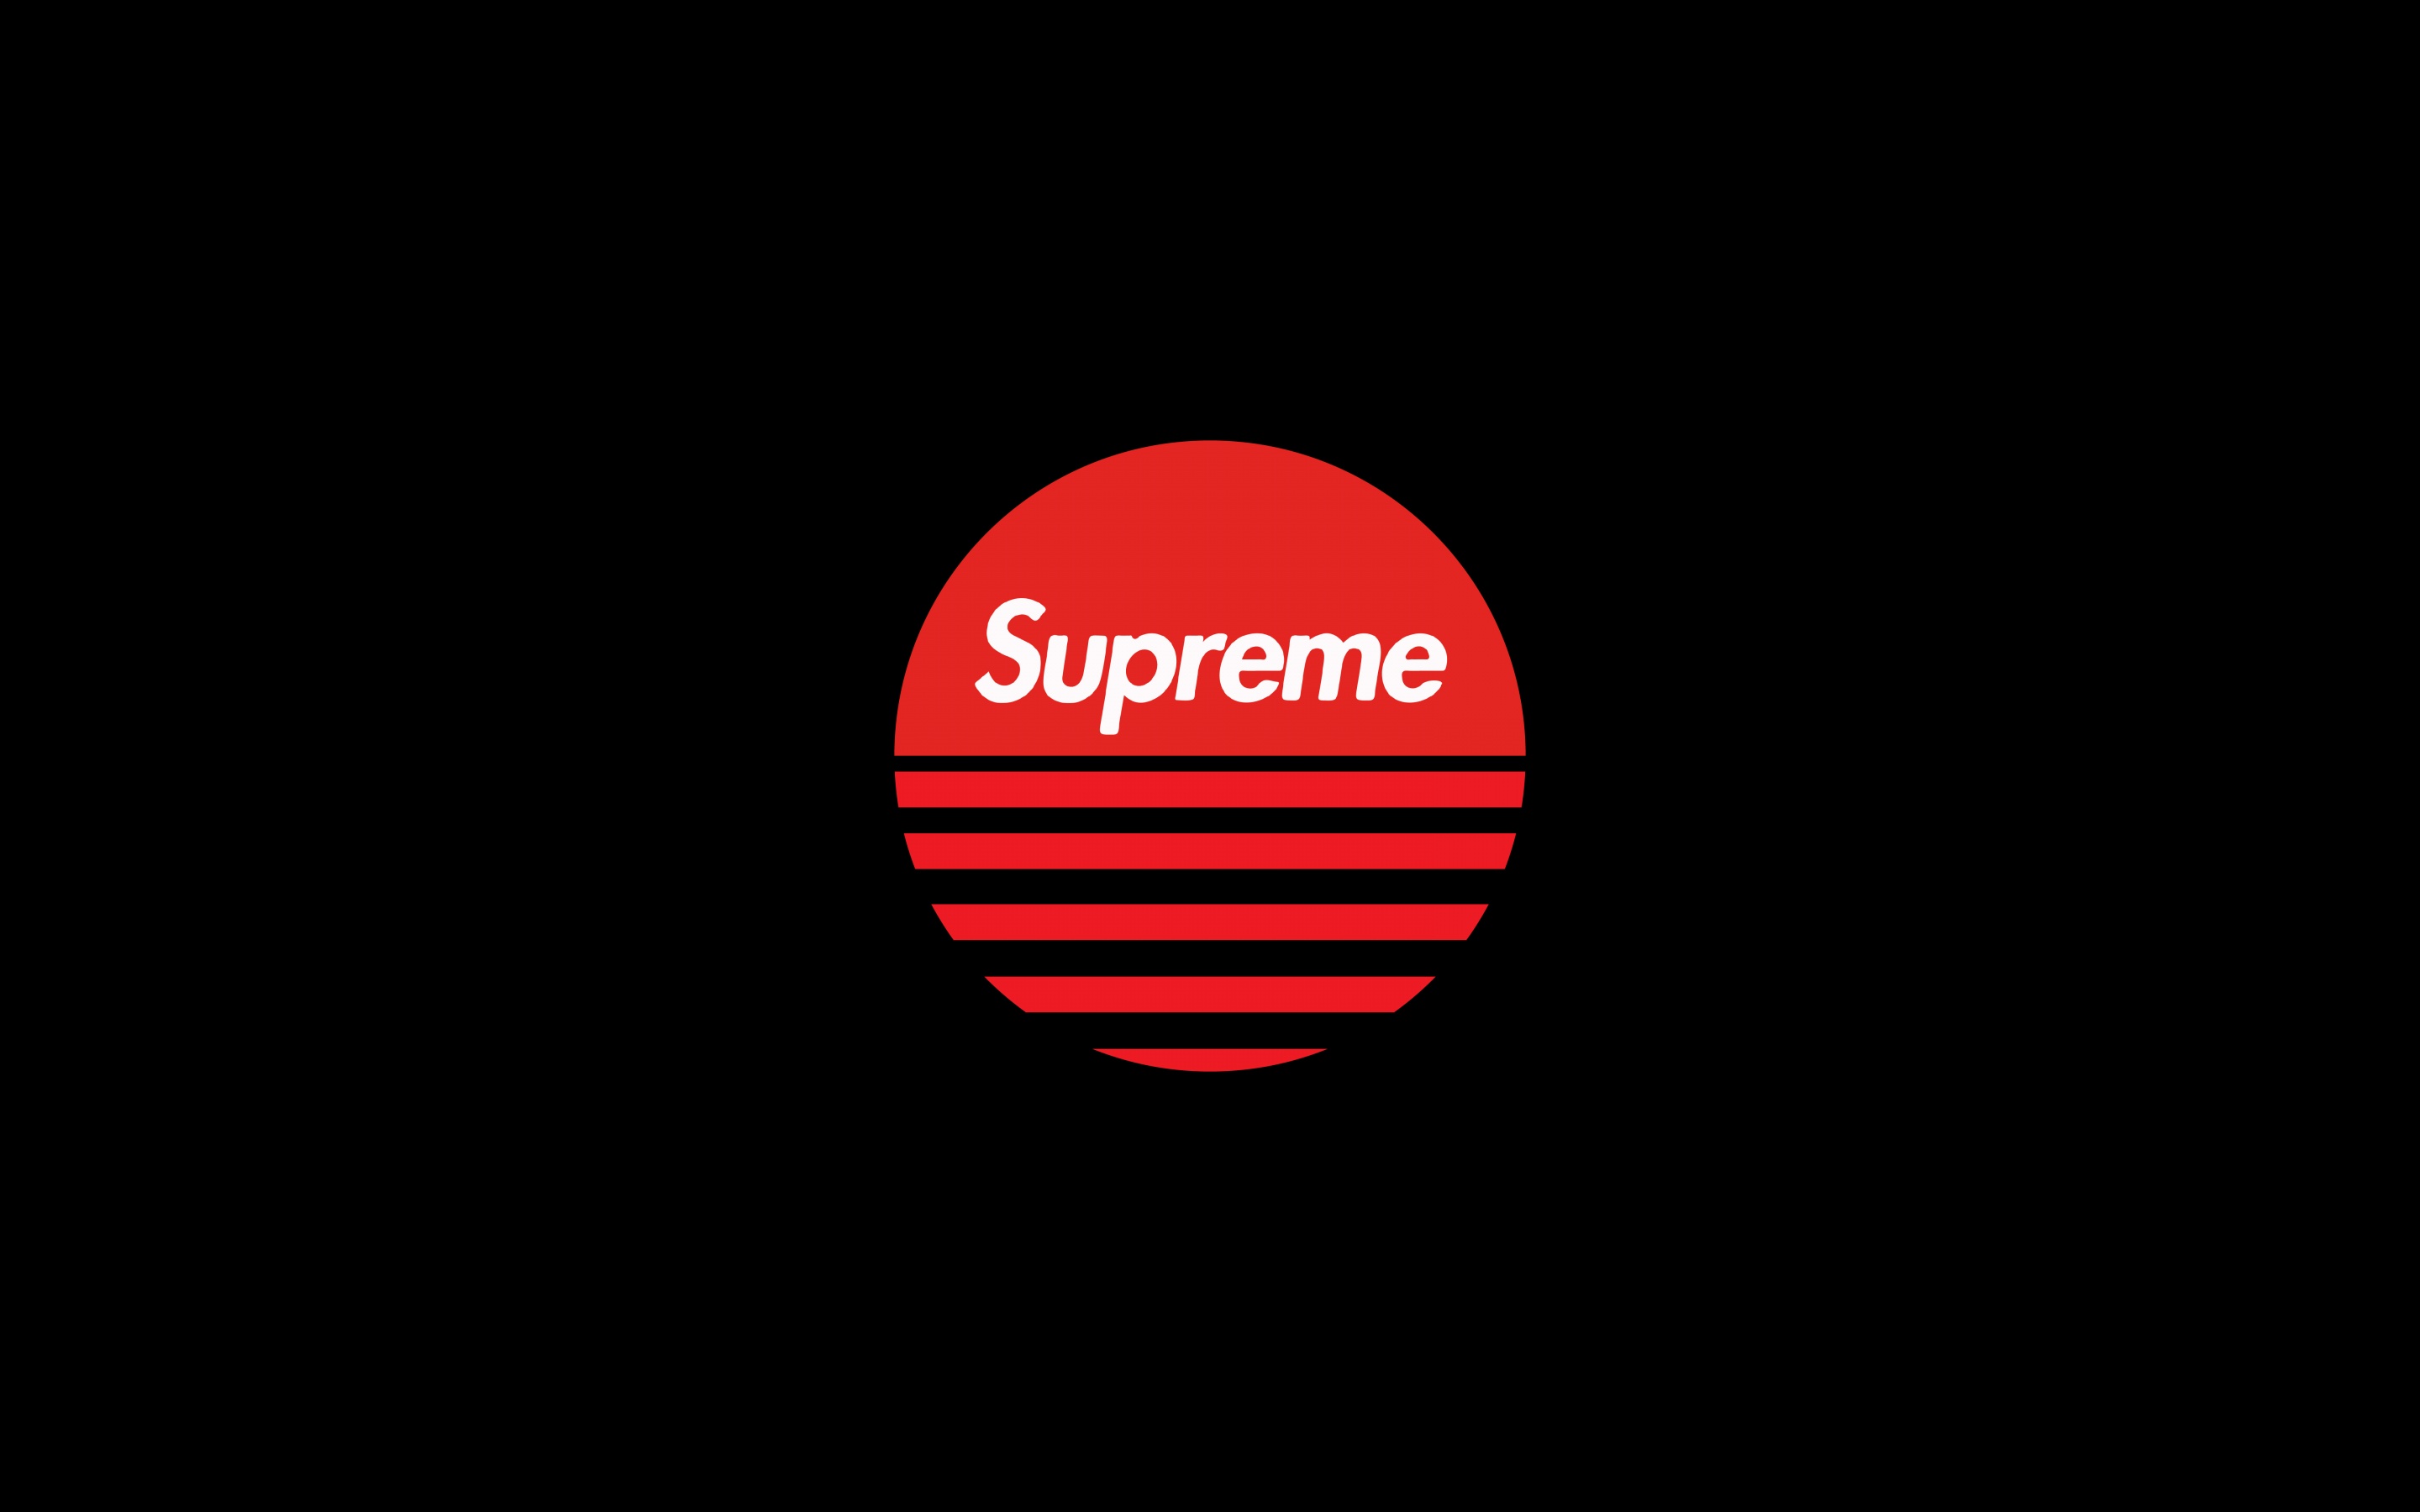 Supreme Logo Full UHD 4K Wallpaper